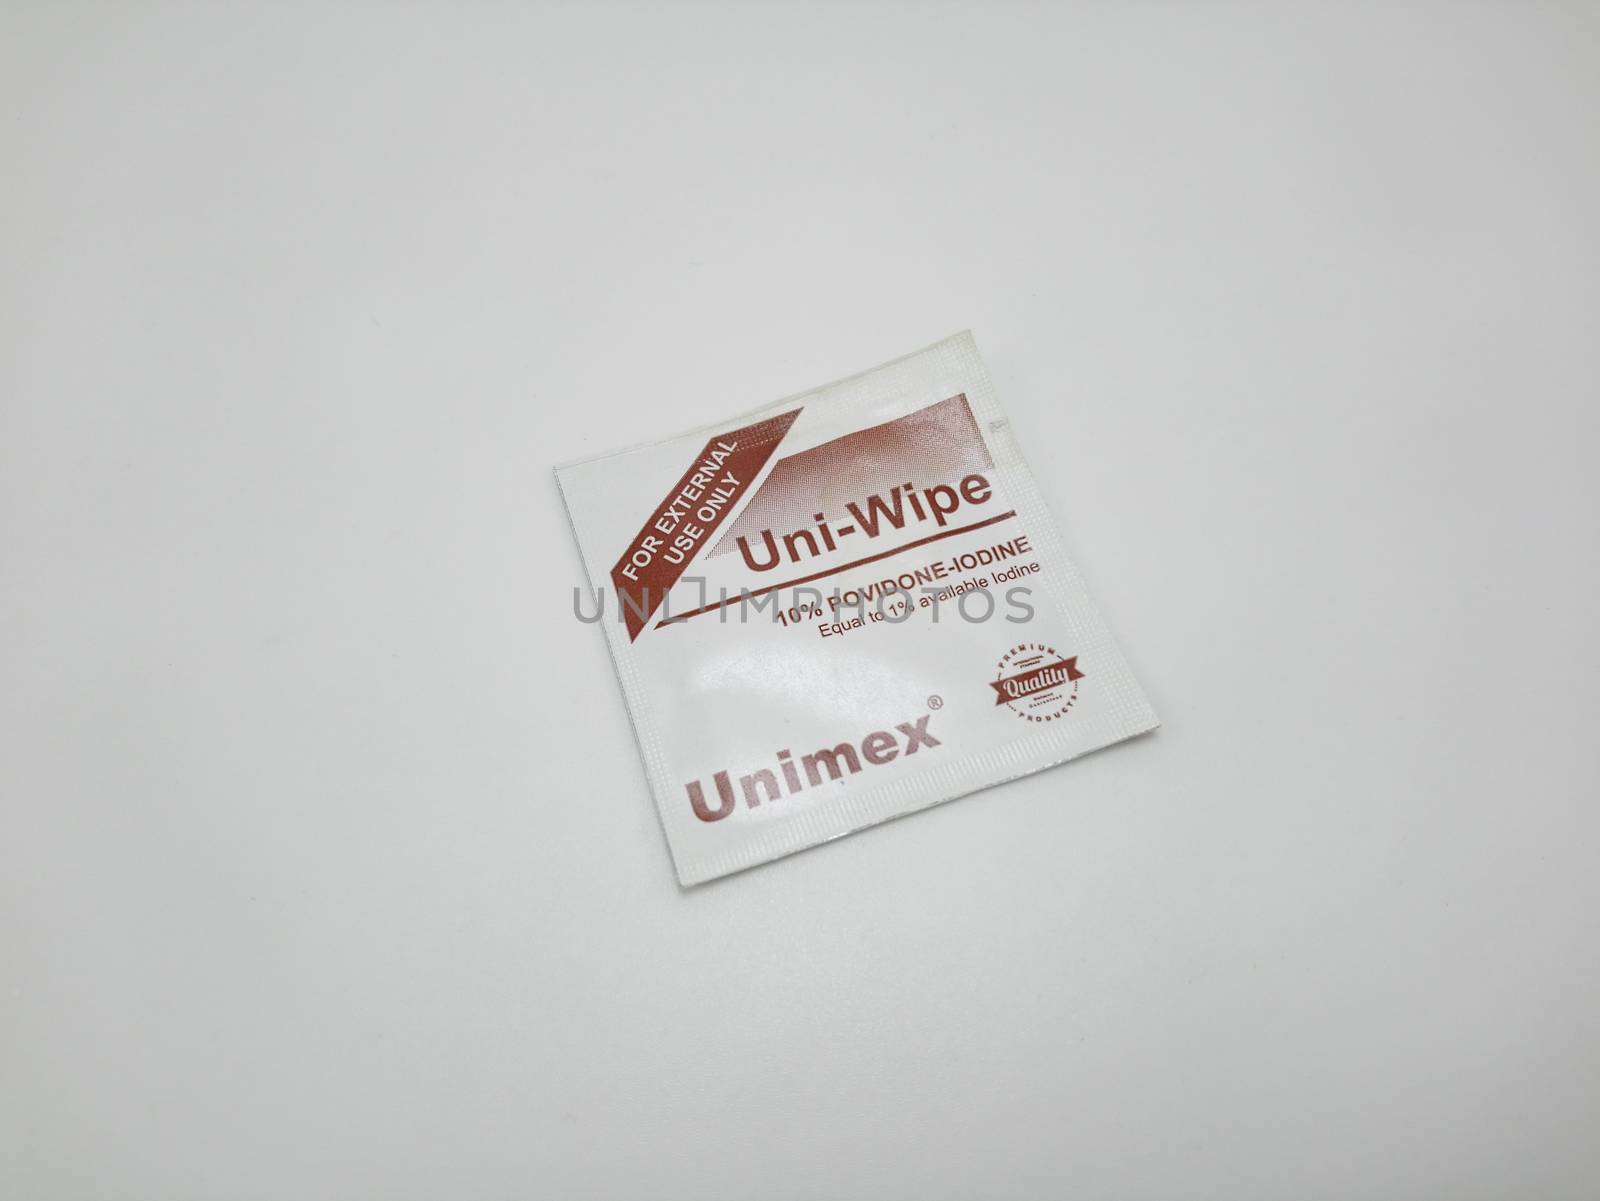 Unimex uni wipe povidone iodine alcohol wipes in Manila, Philipp by imwaltersy